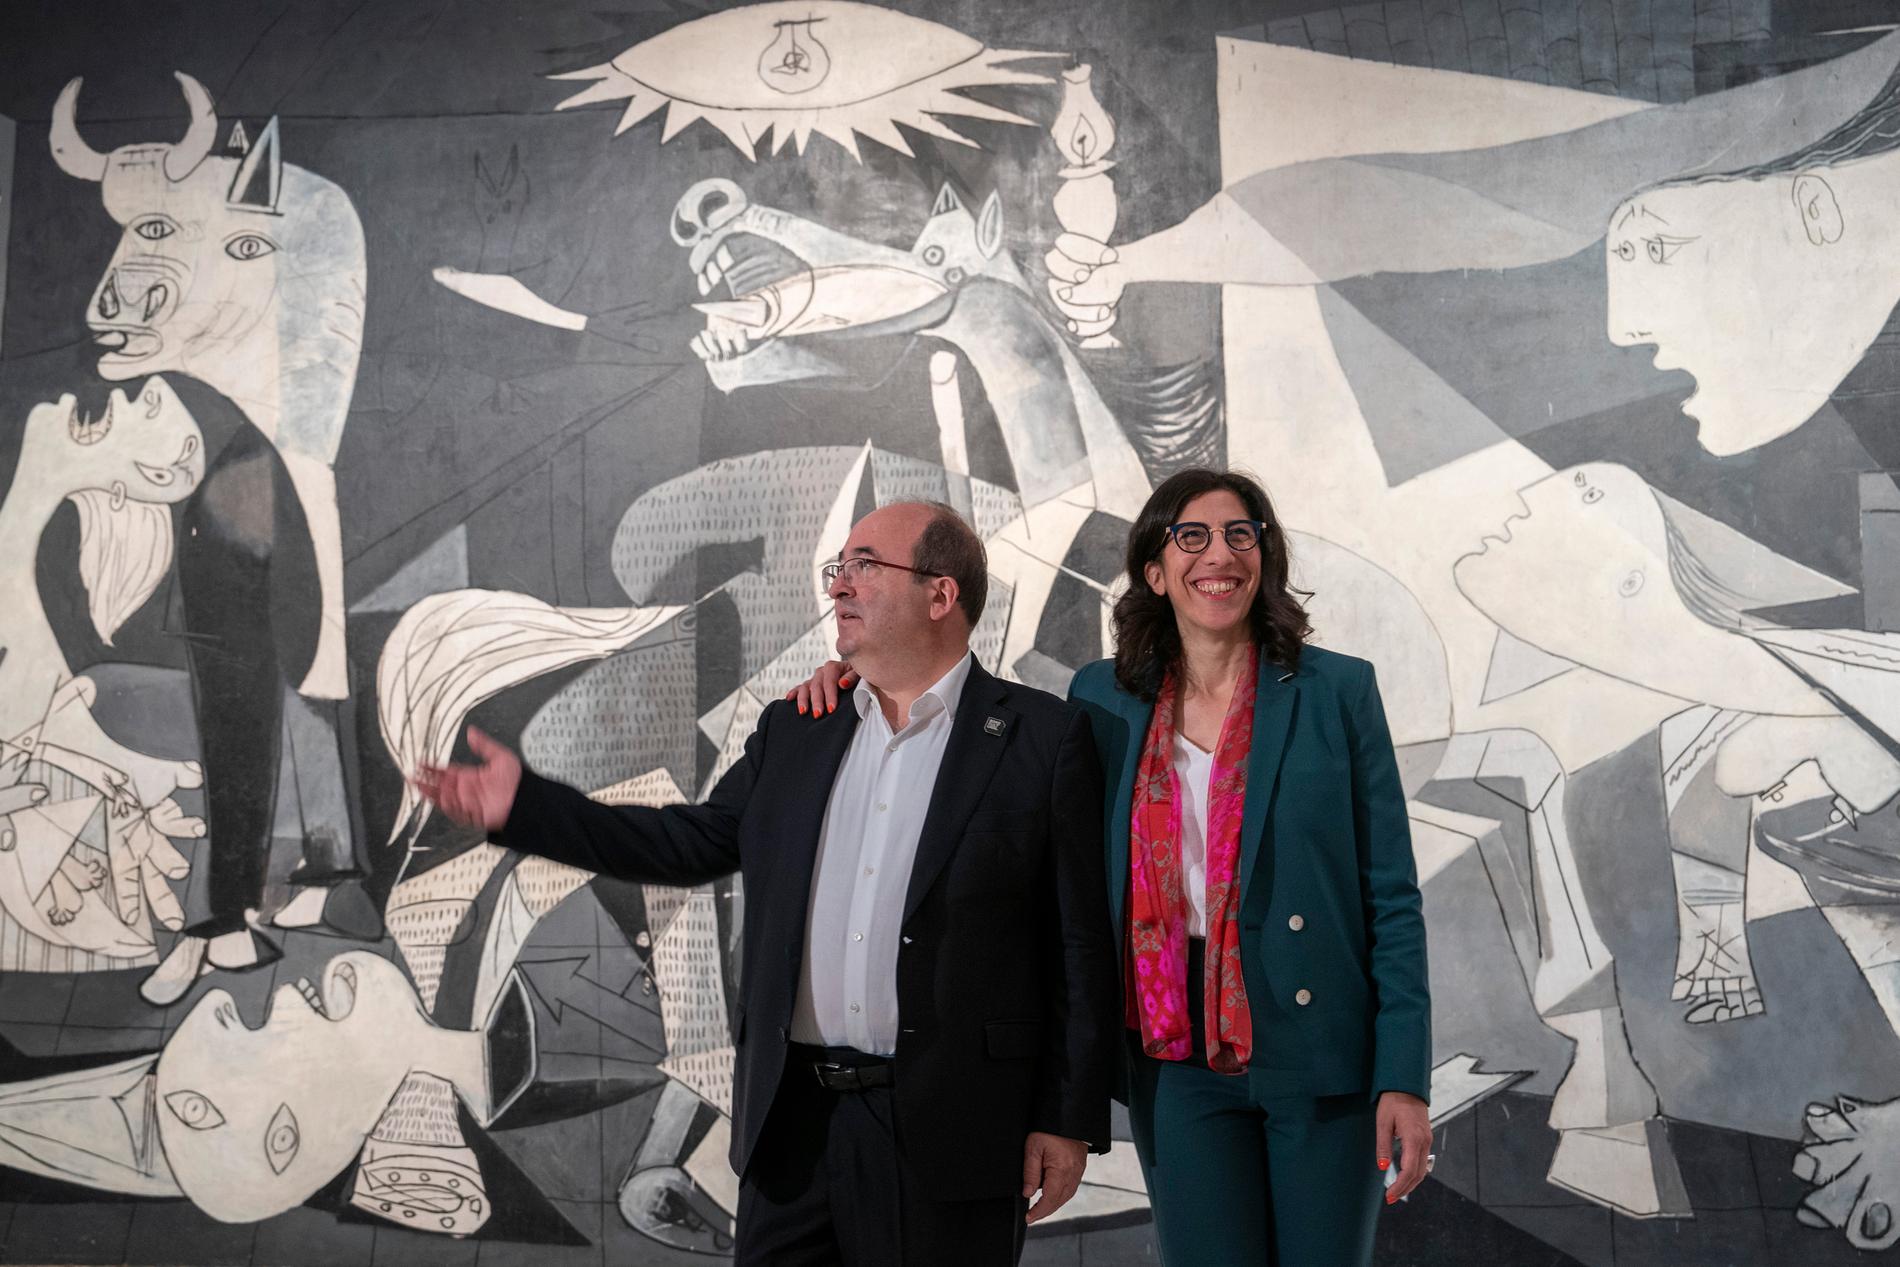 Frankrikes kulturminister Rima Abdul-Malakin och Spaniens kulturminister Miquel Iceta presenterade planen inför 50-årsfirandet under presskonferens framför Pablo Picassos målning ”Guernica”.